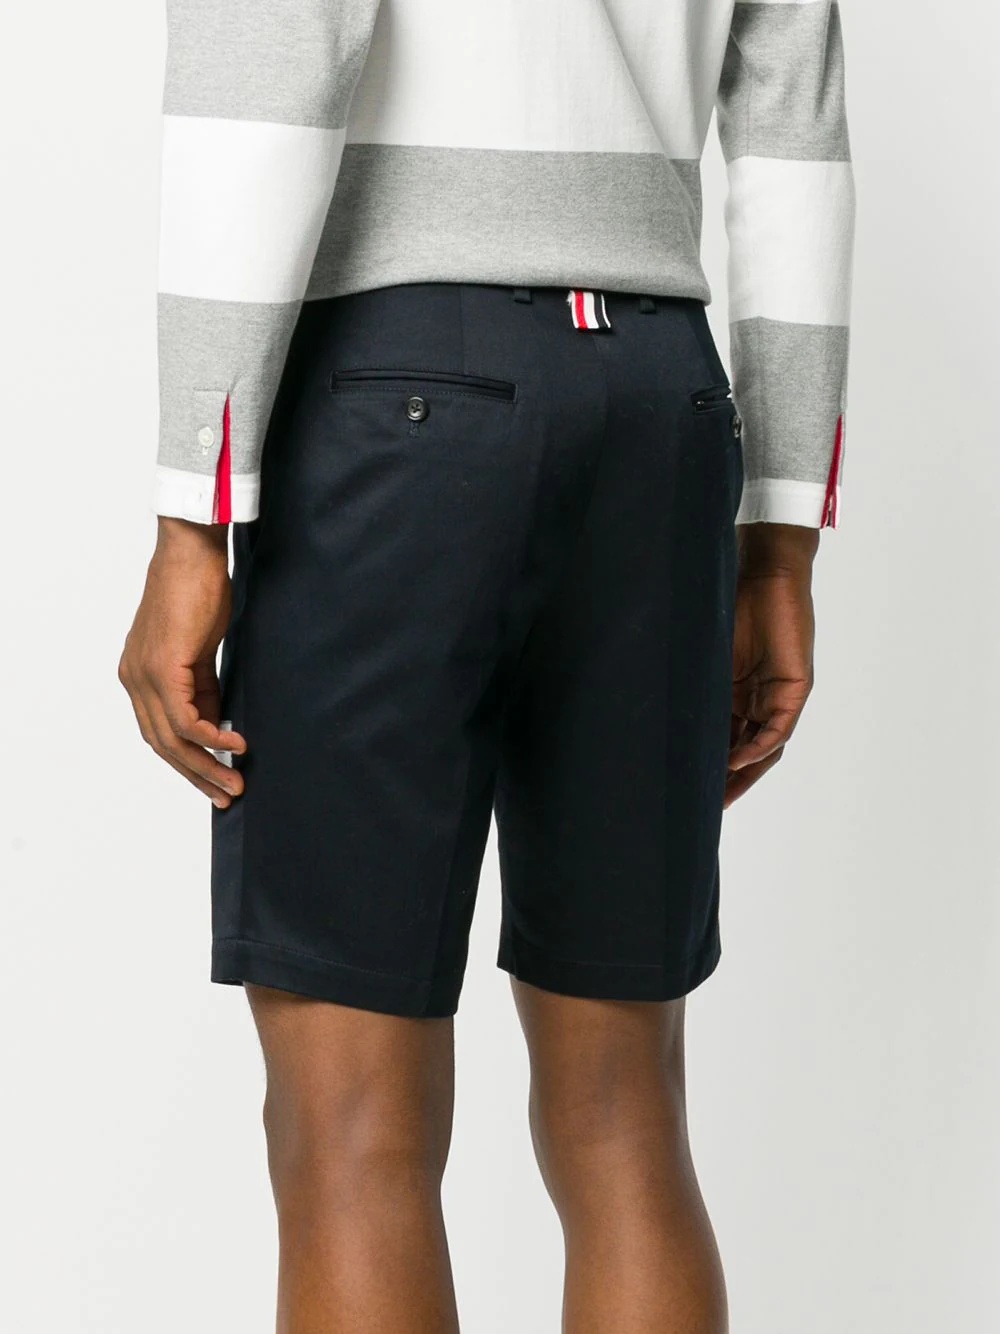 Cotton Twill Chino Shorts - 4